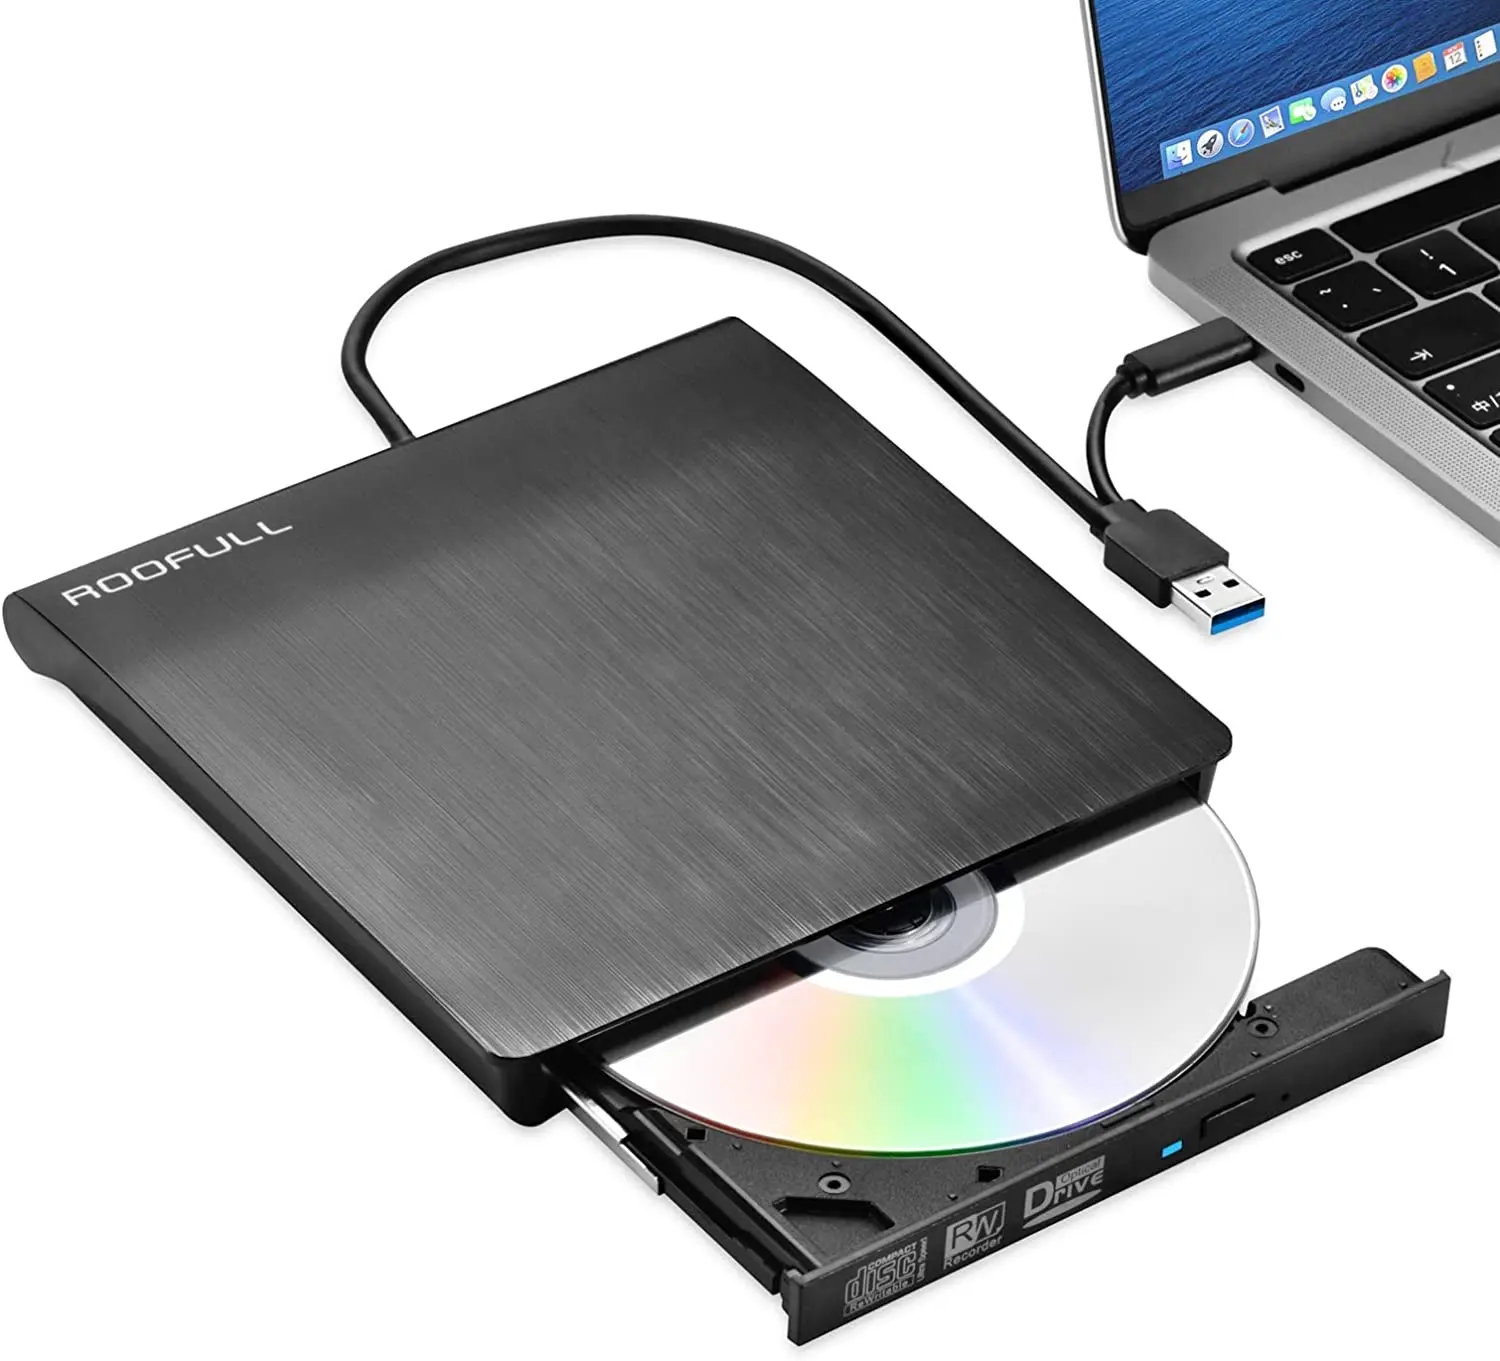 เครื่องเล่น CD DVD RW USB3.0 USB-C เครื่องอ่านเครื่องเขียนสำหรับคอมพิวเตอร์แล็ปท็อปคุณภาพสูงขายดีกล่องสีบางเฉียบ